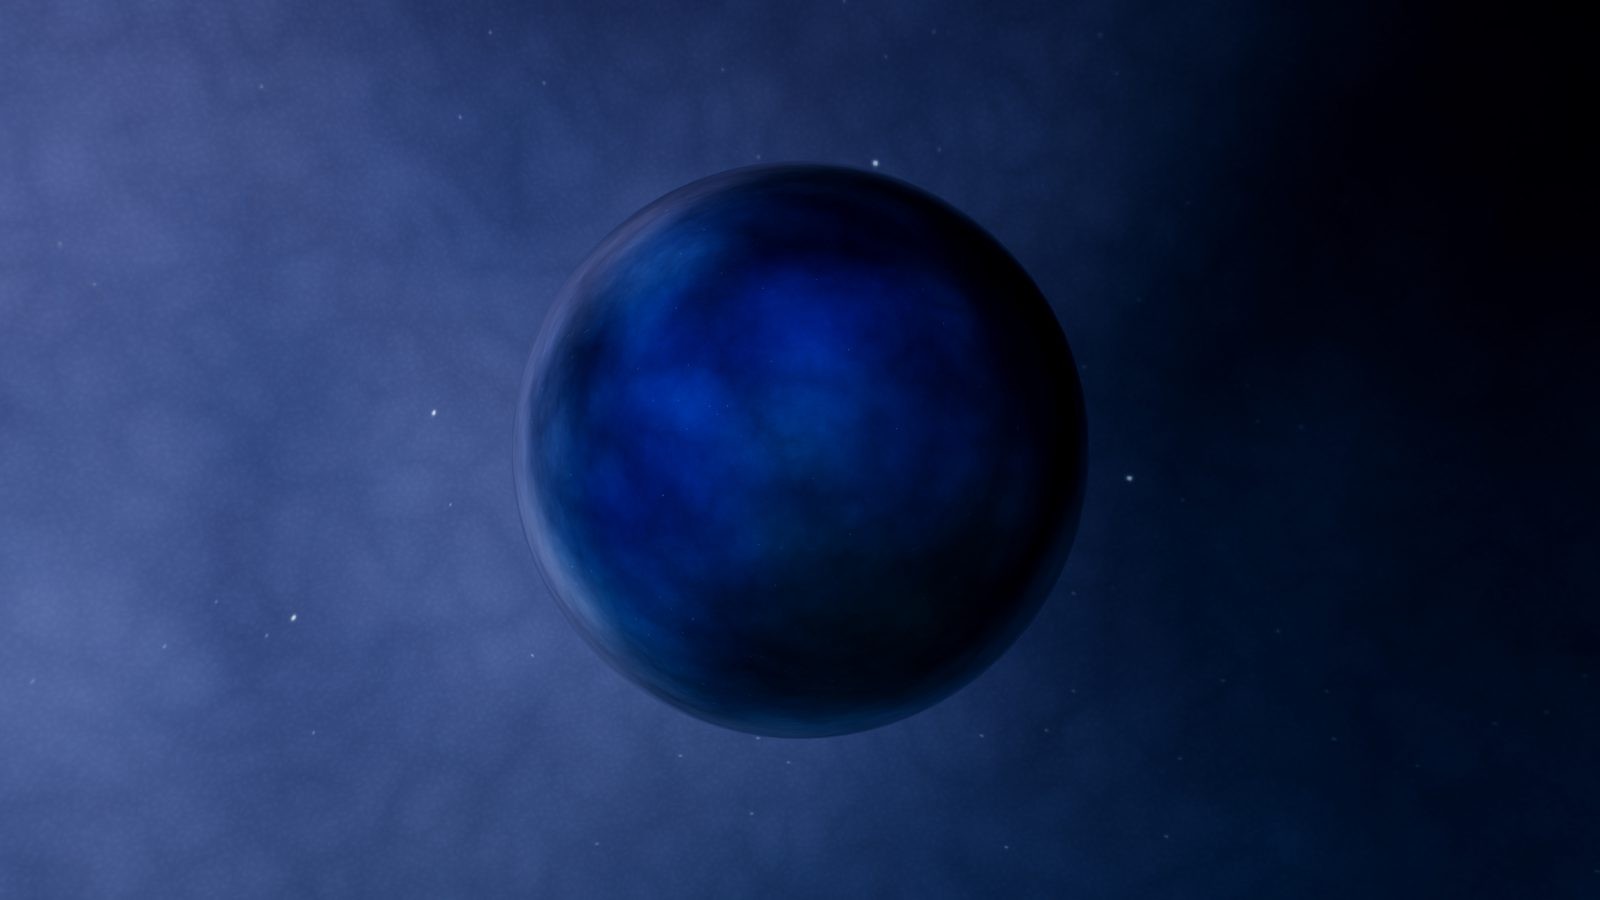 Symulacje wskazują, że w Układzie Słonecznym kryje się tajemnicza dziewiąta planeta. Jak duża? (fot. Getty Images)
